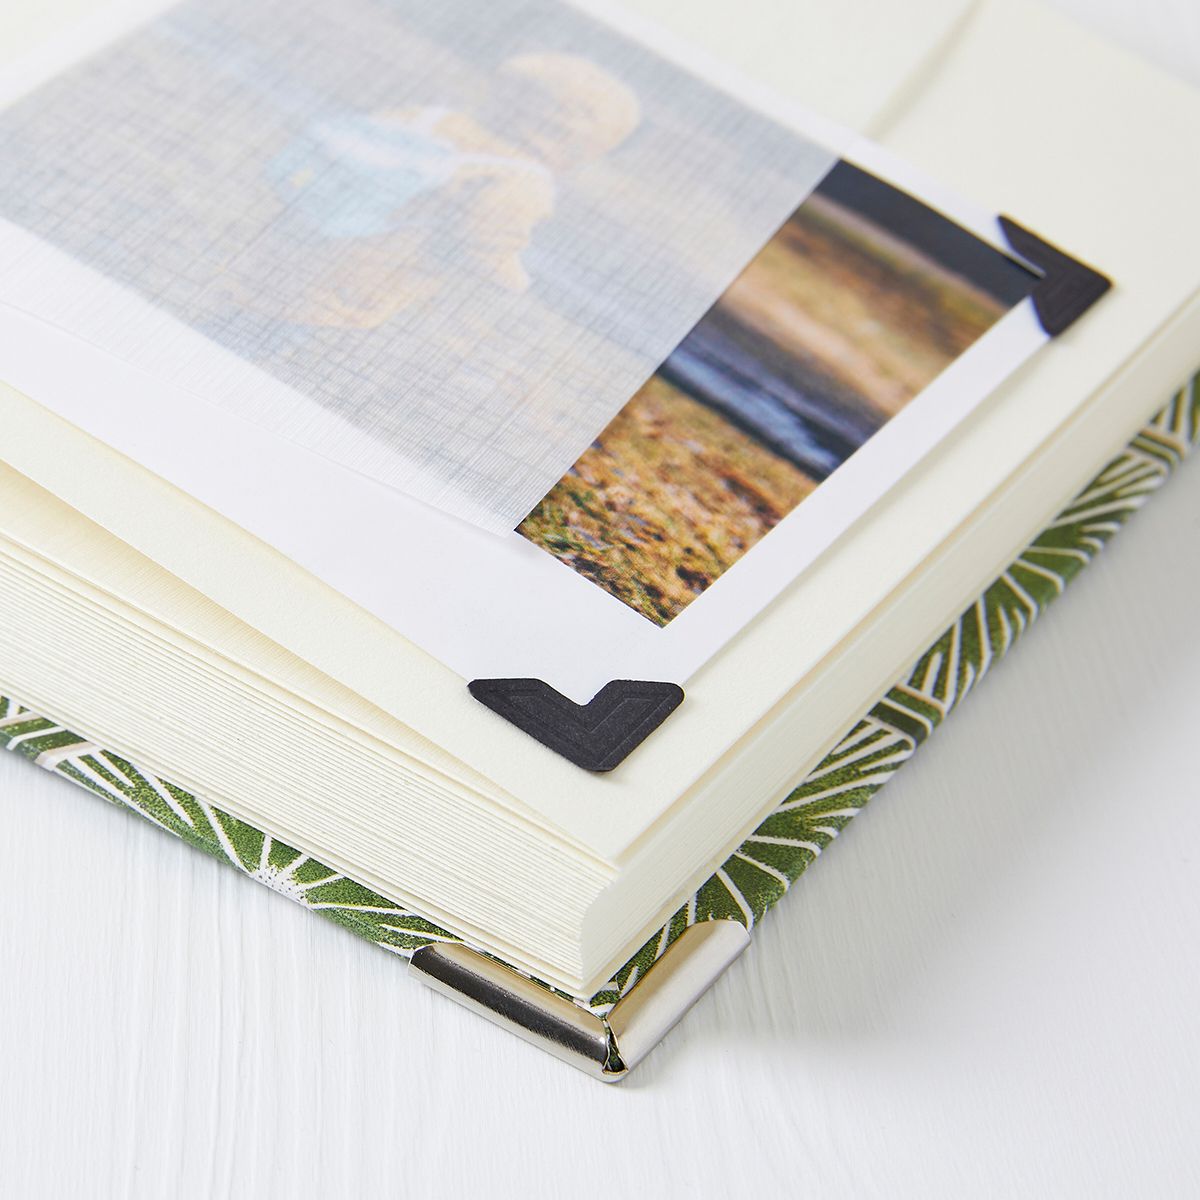 fabric covered photo album